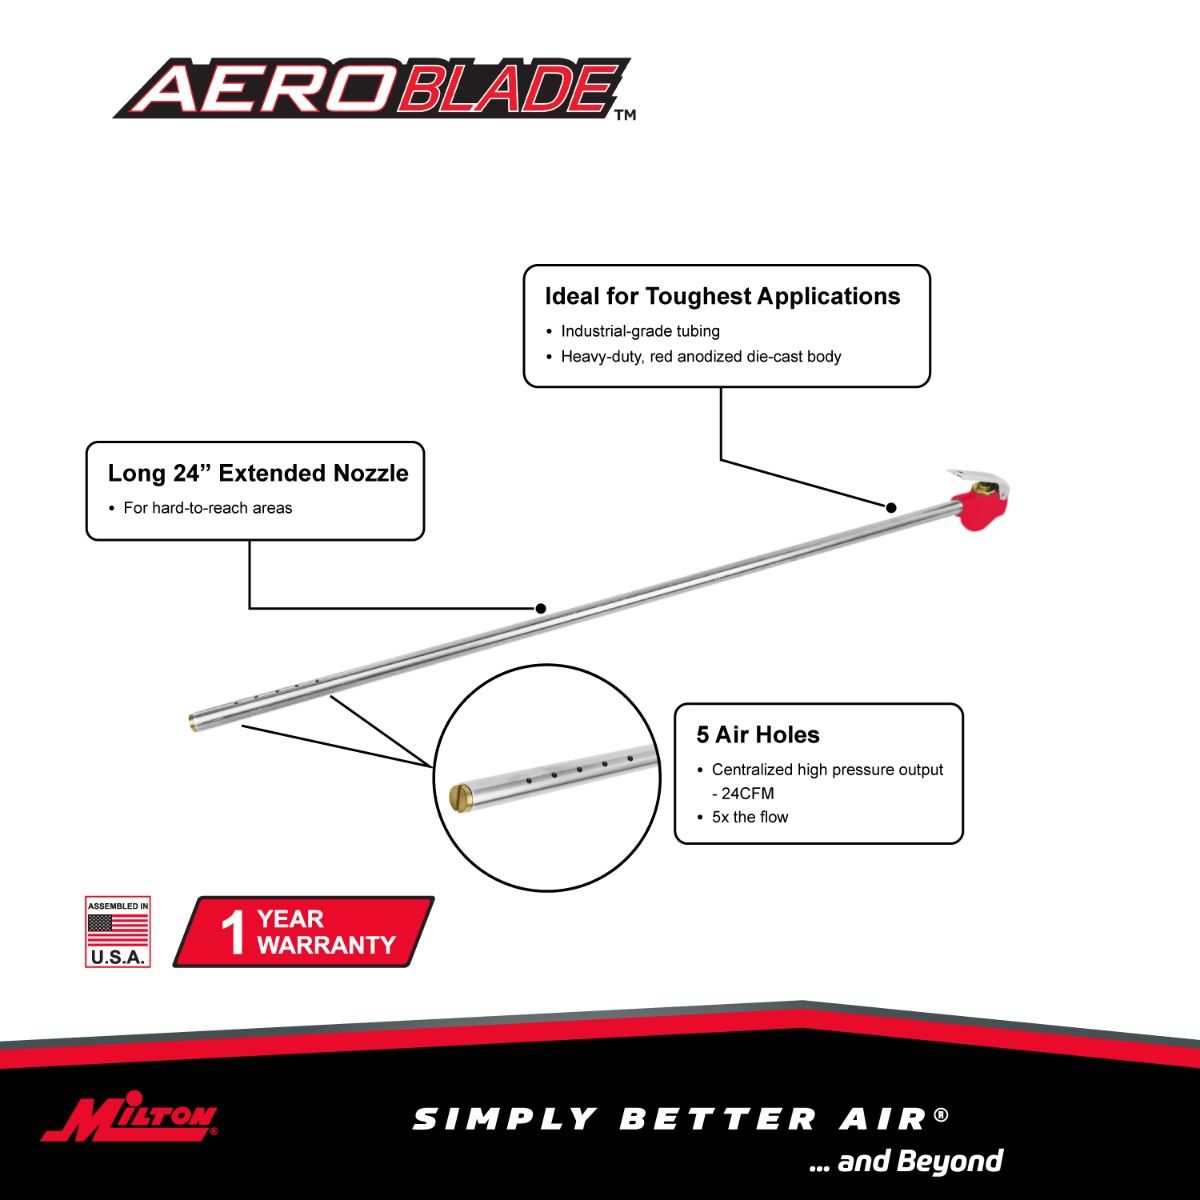 158-AB24 - Milton® AeroBlade™ 24